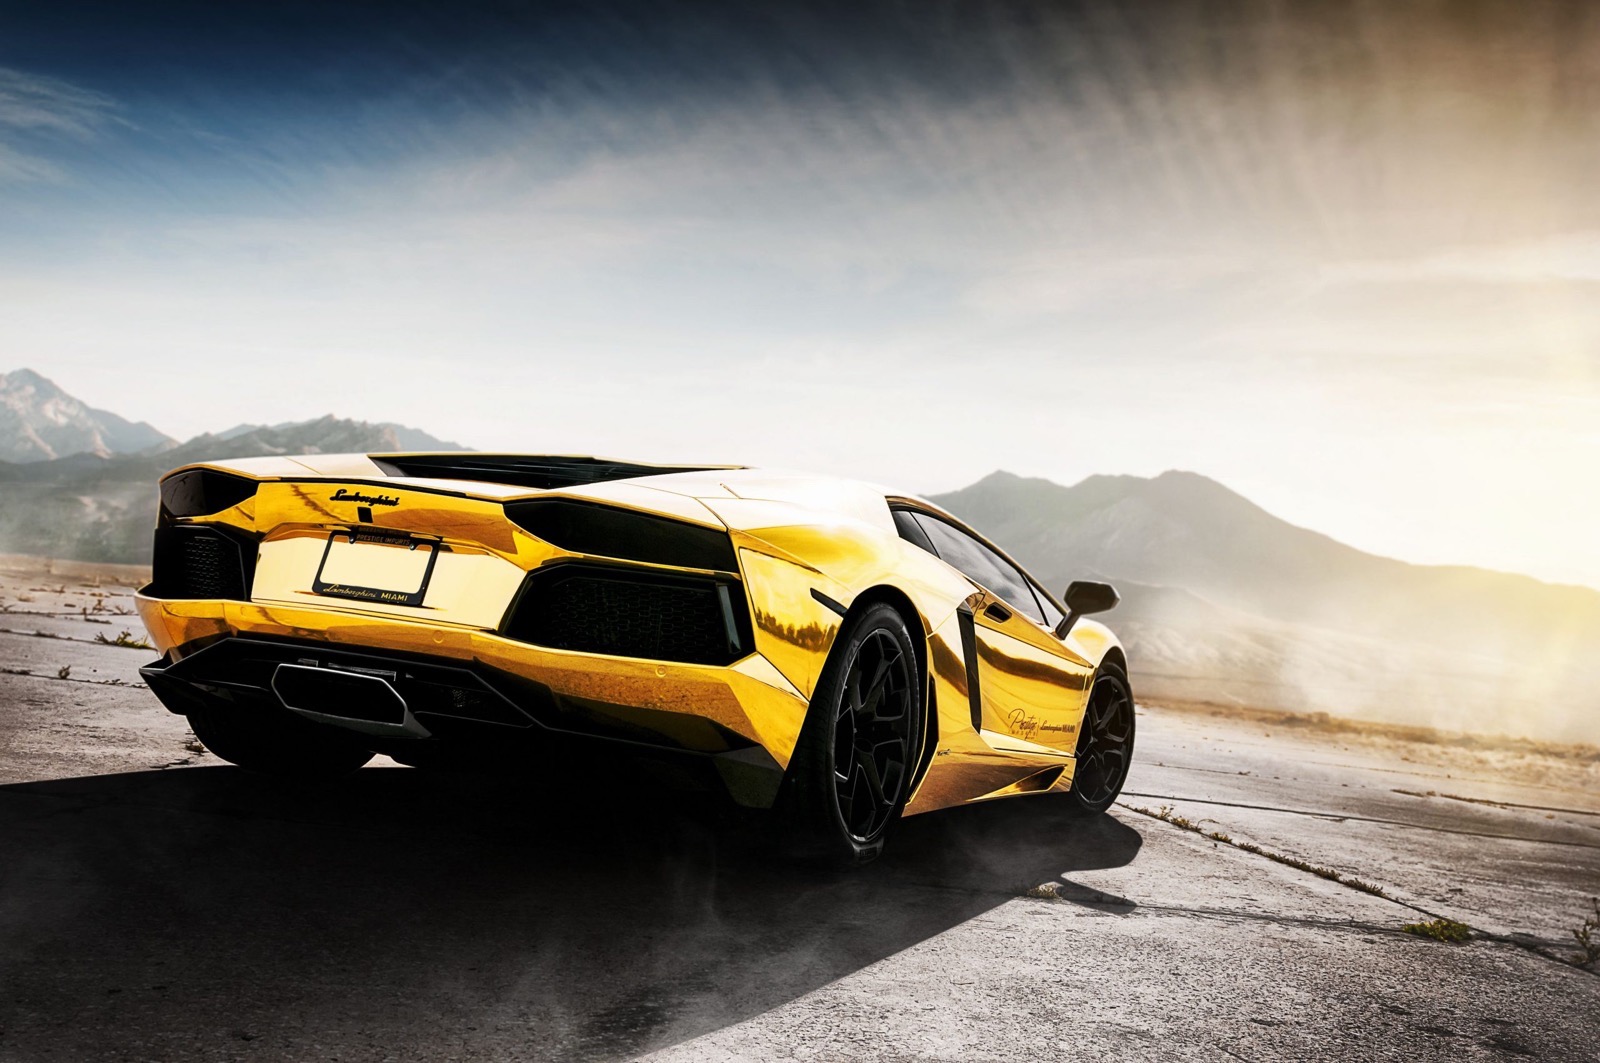 Gold Lamborghini car